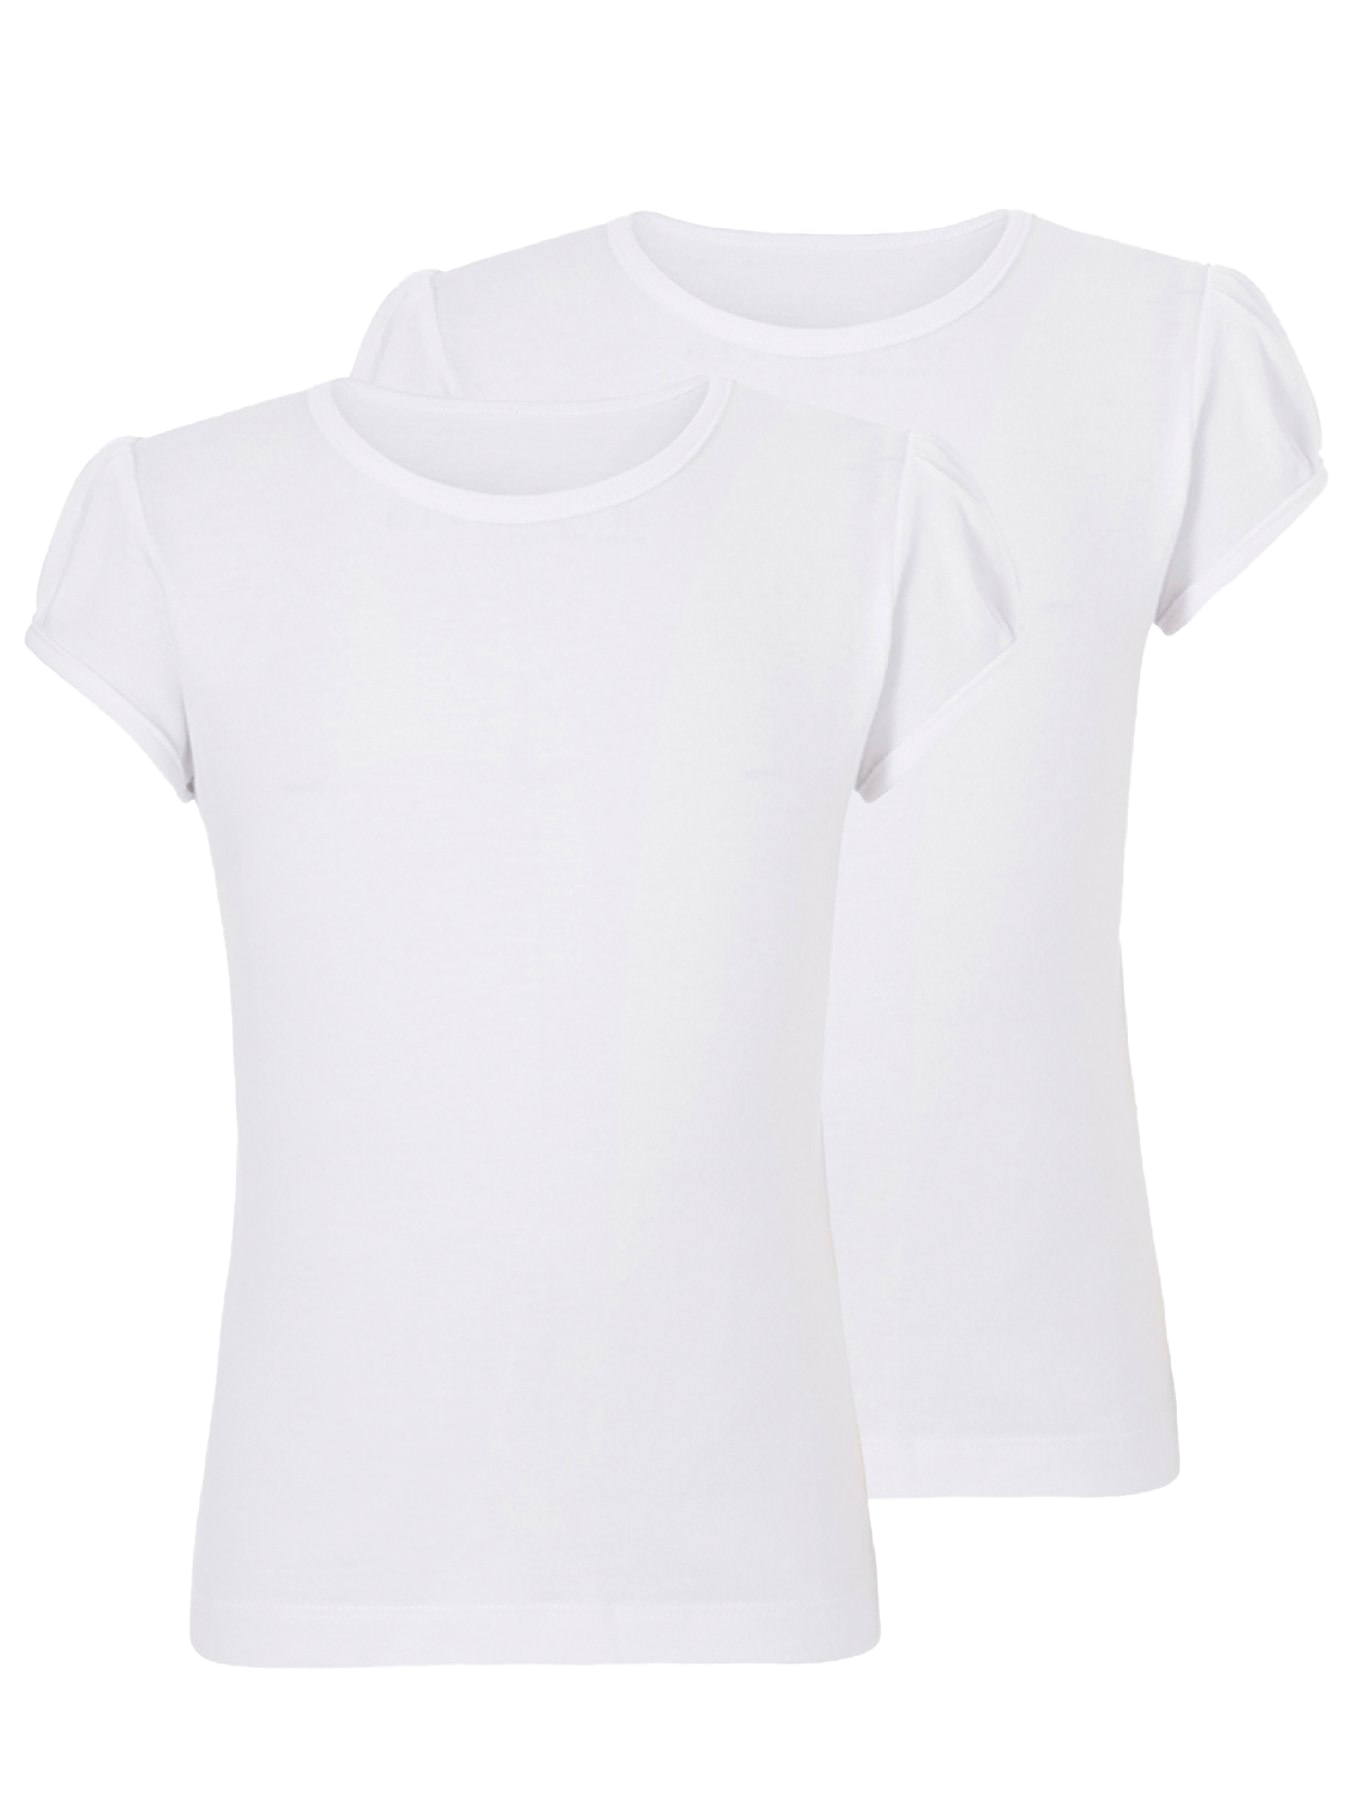 T-shirt putih polos PNG unduh Gambar